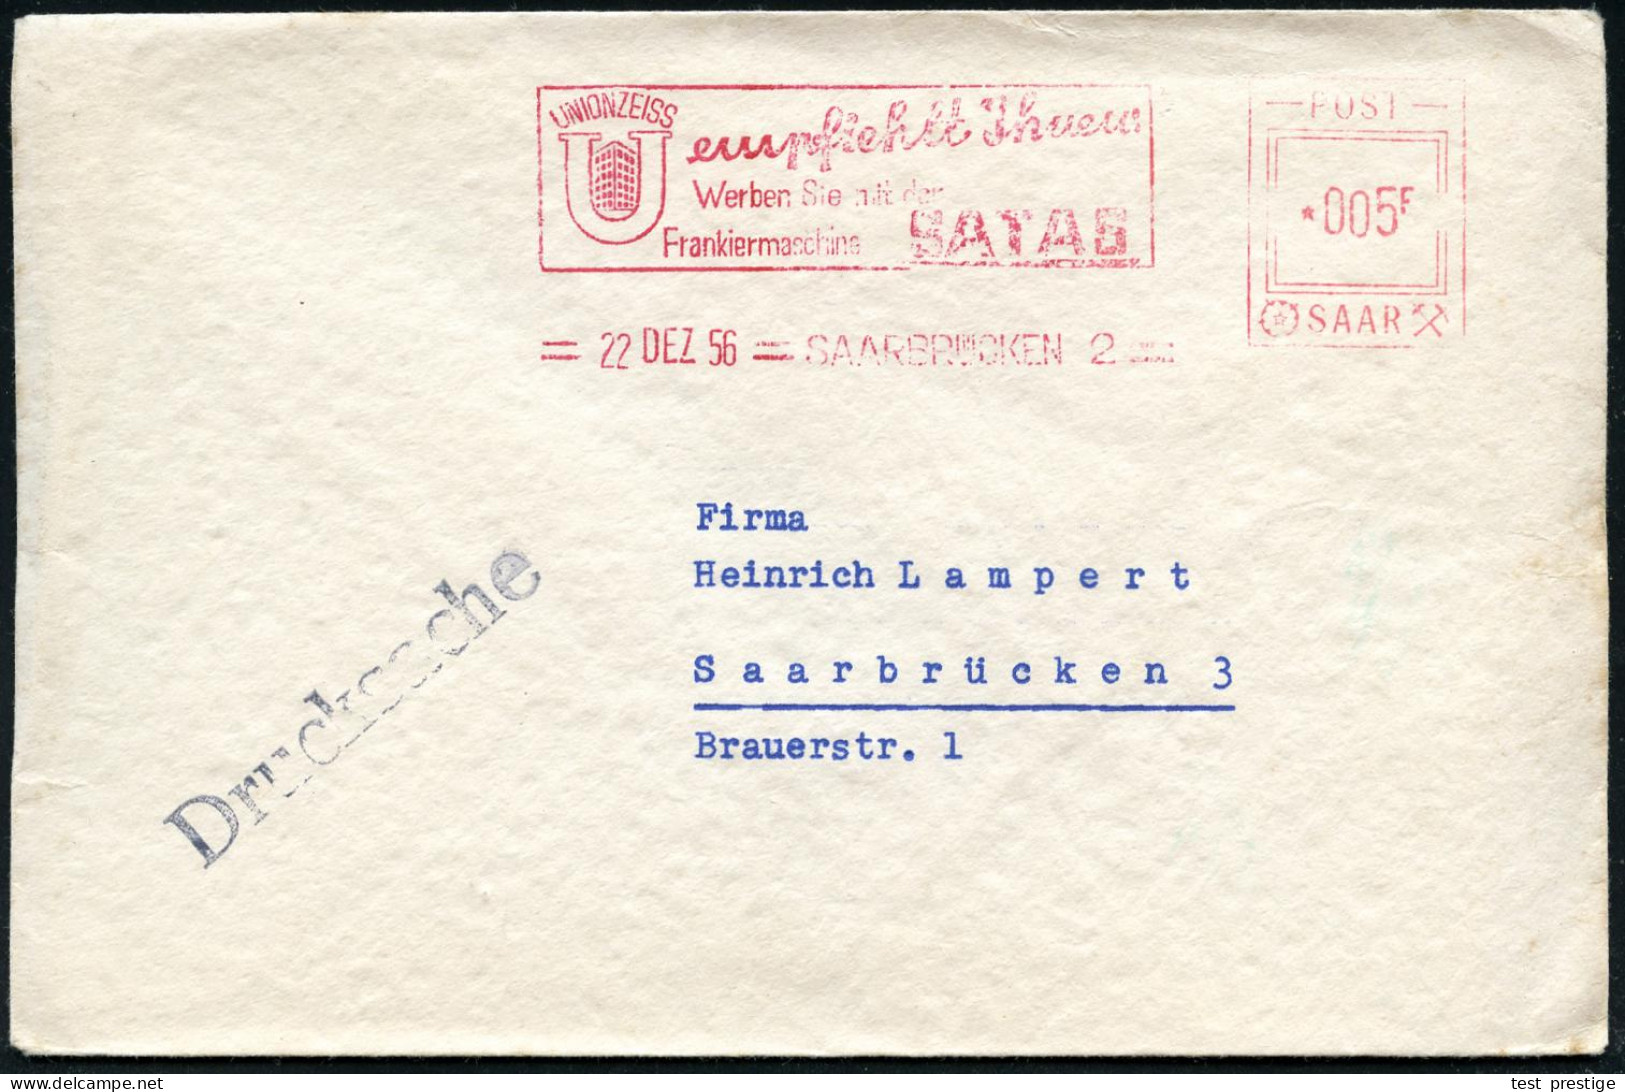 SAARBRÜCKEN 2/ UNION ZEISS../ Werben Sie Mit Der/ Frankiermaschine SATAS 1956 (22.12.) AFS Satas "POST SAAR" 005 F. (Fir - Autres